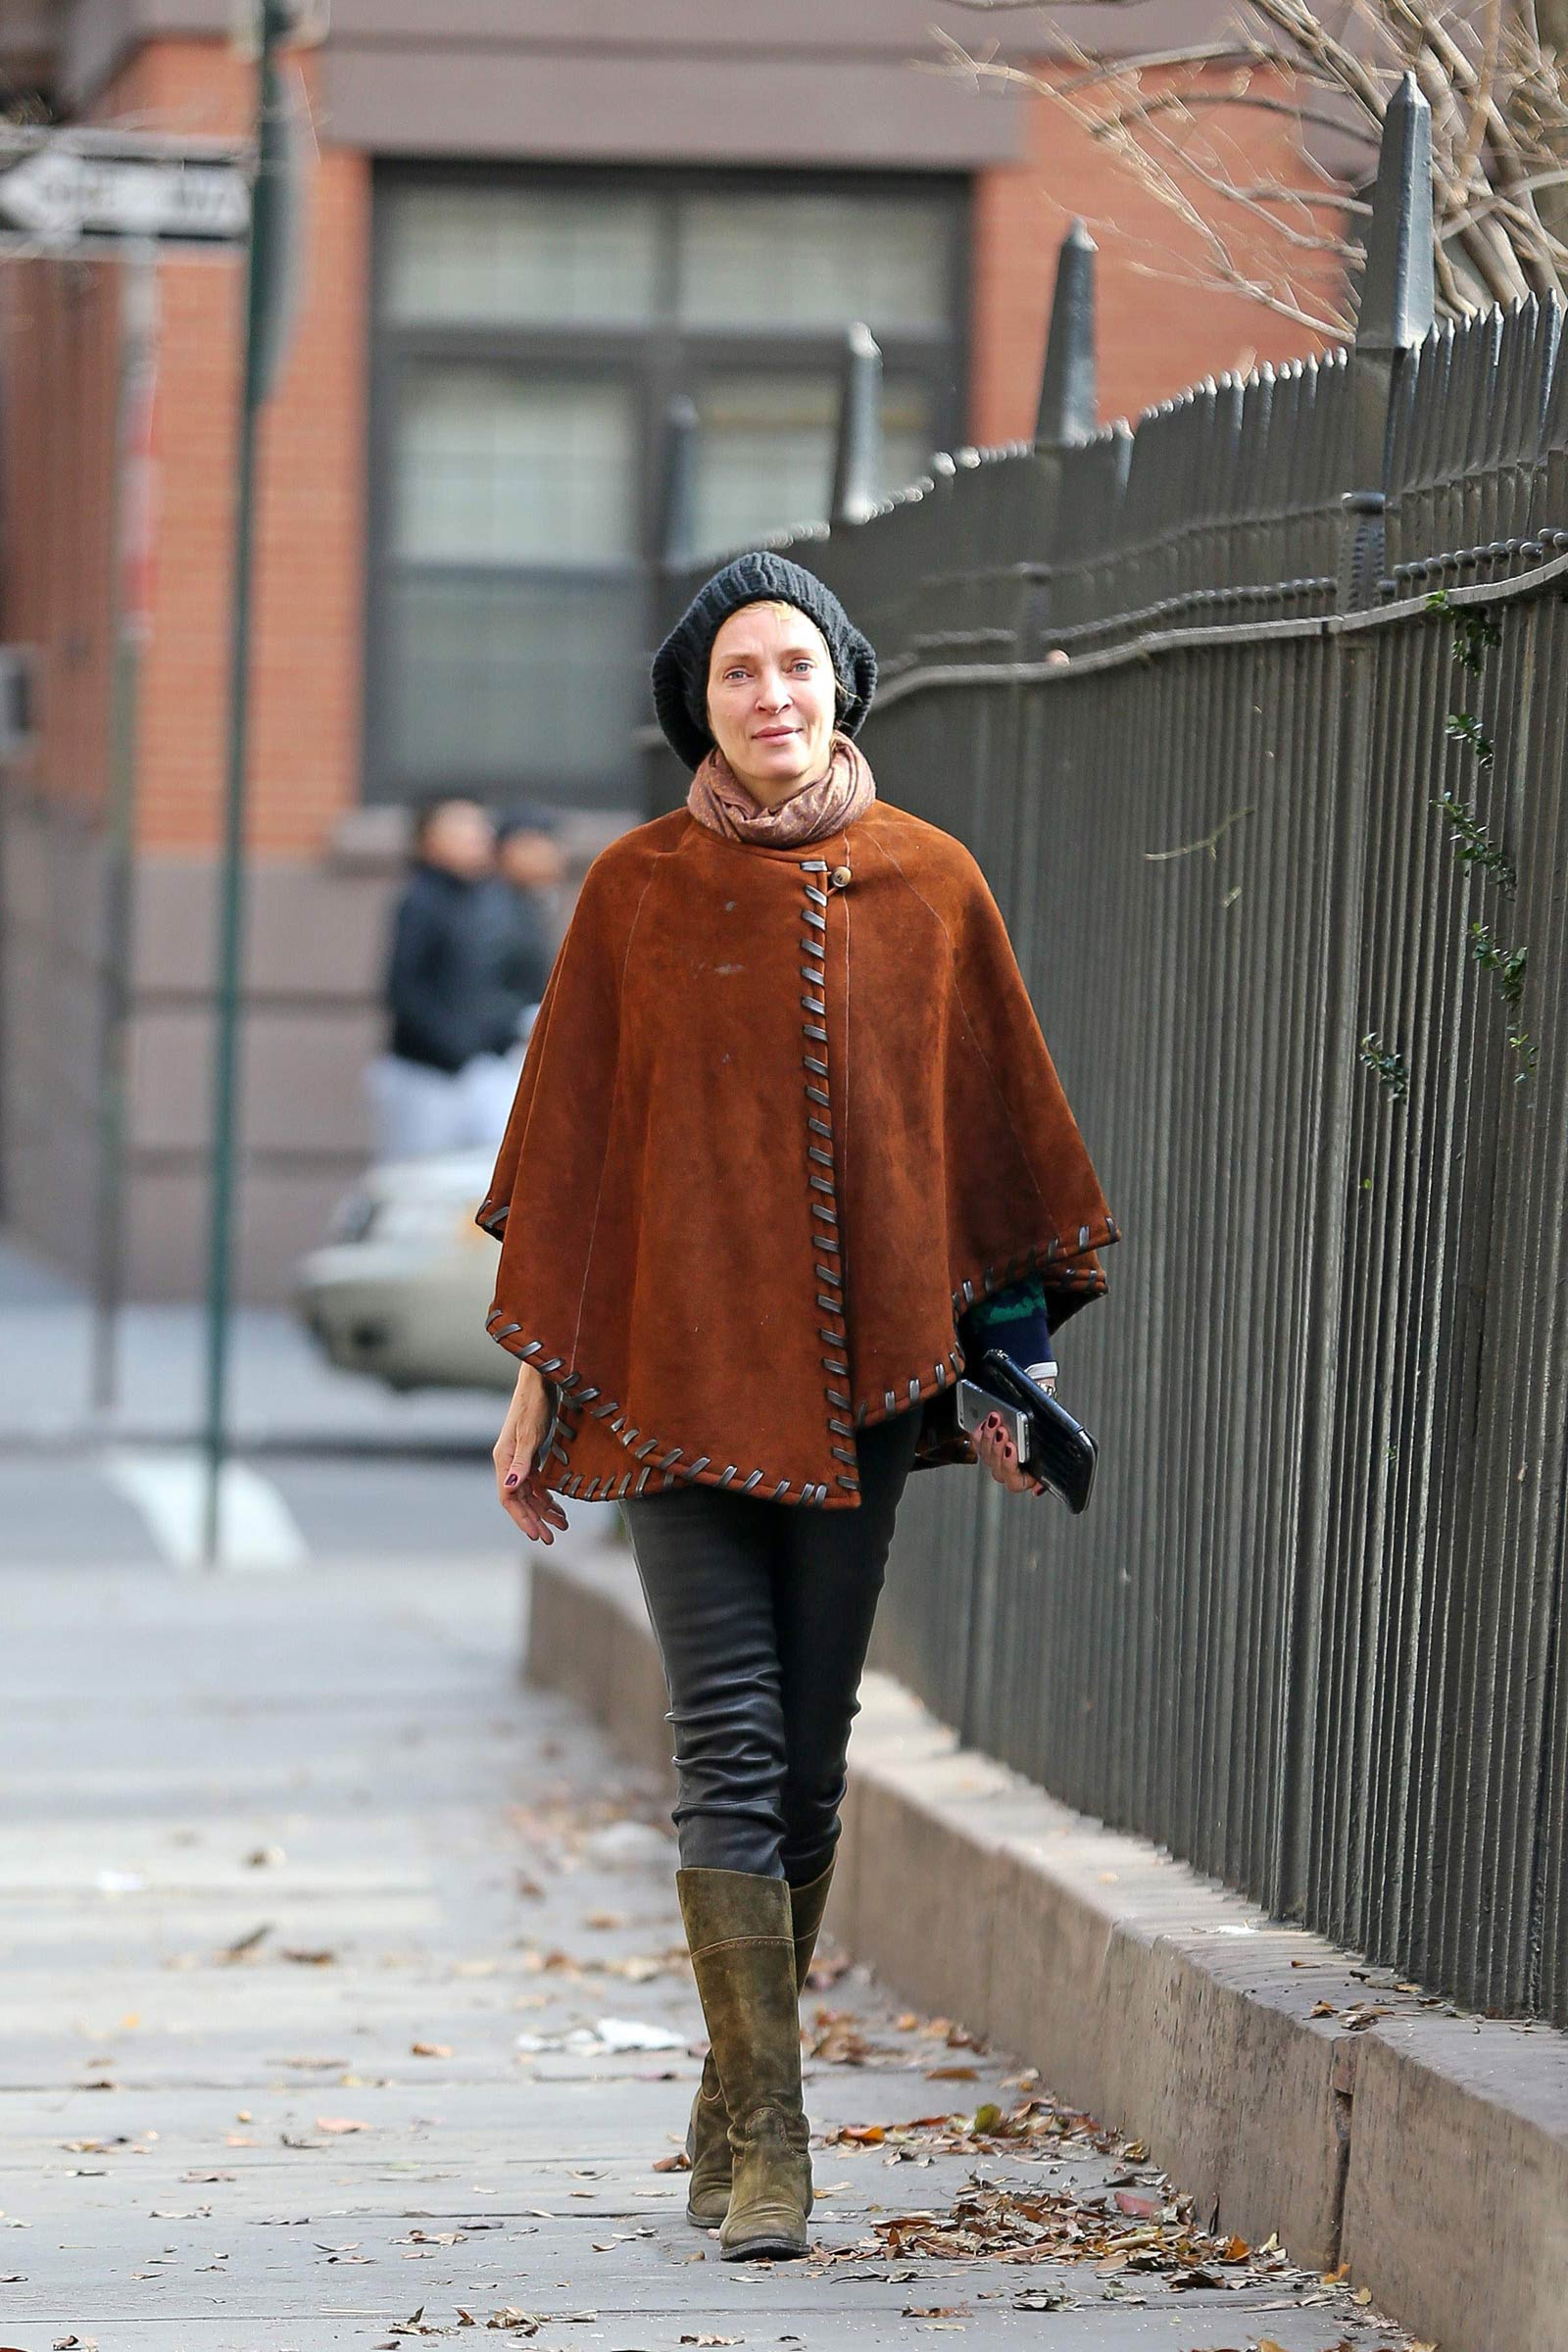 Uma Thurman walking around in New York City